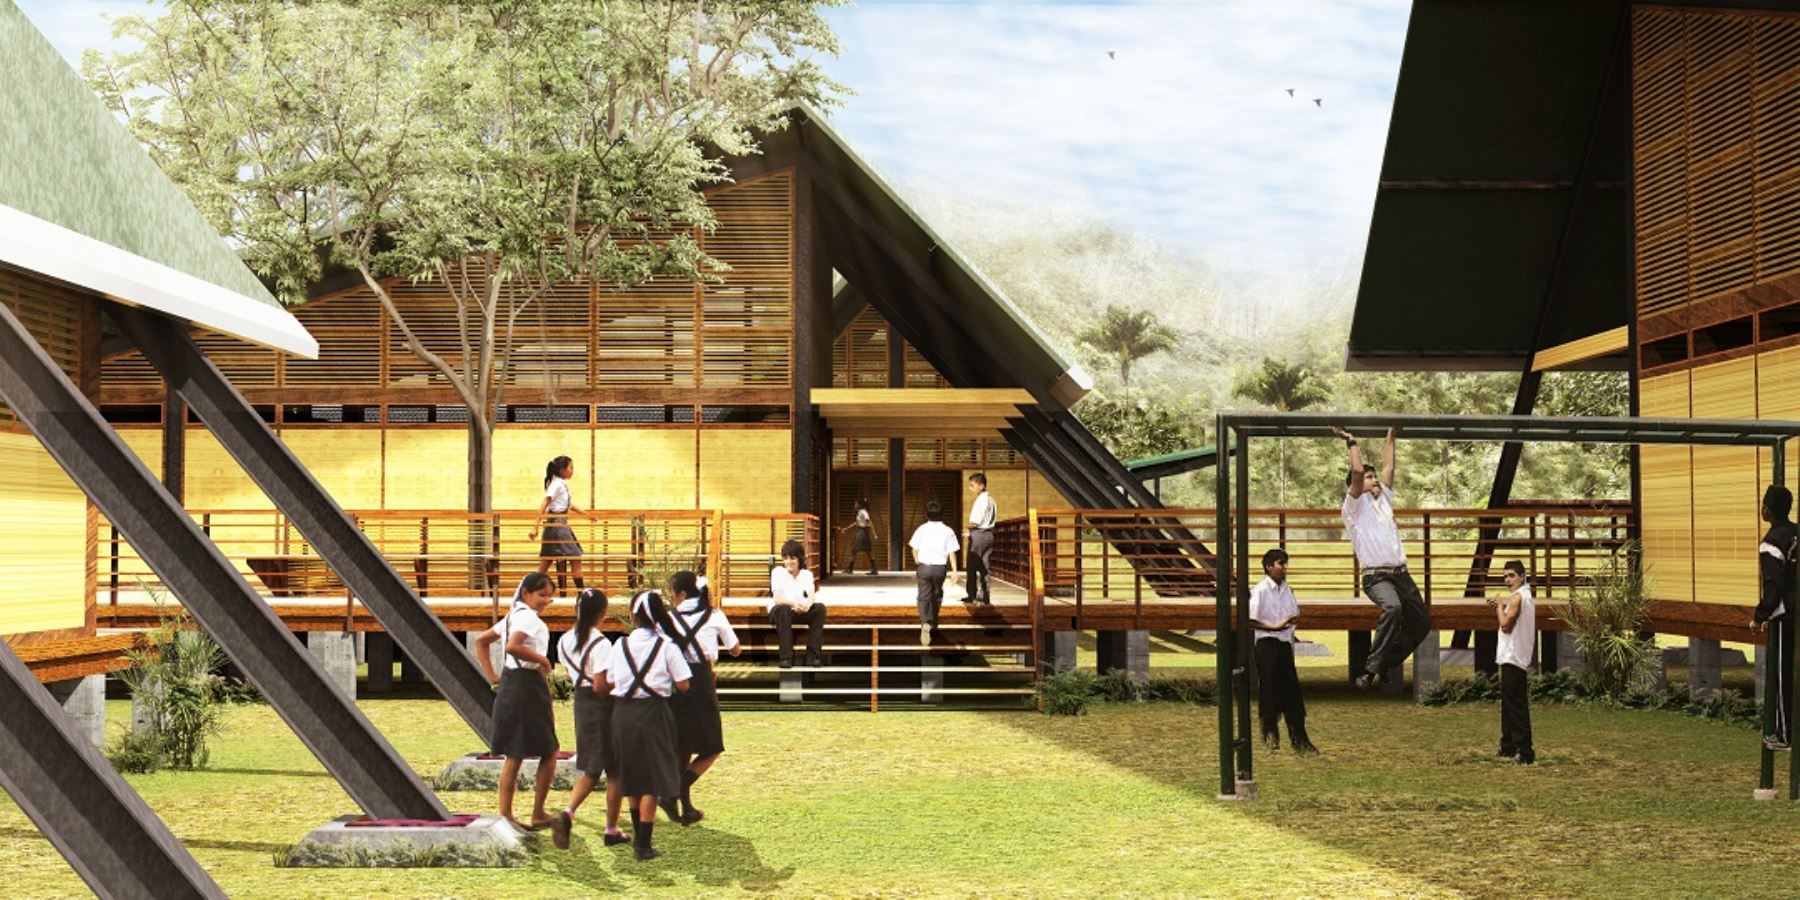 El sistema arquitectónico modular del Plan Selva propuesto por el Minedu -a través del Programa Nacional de Infraestructura Educativa (Pronied) es fácil de instalar en zonas remotas y de geografía difícil.